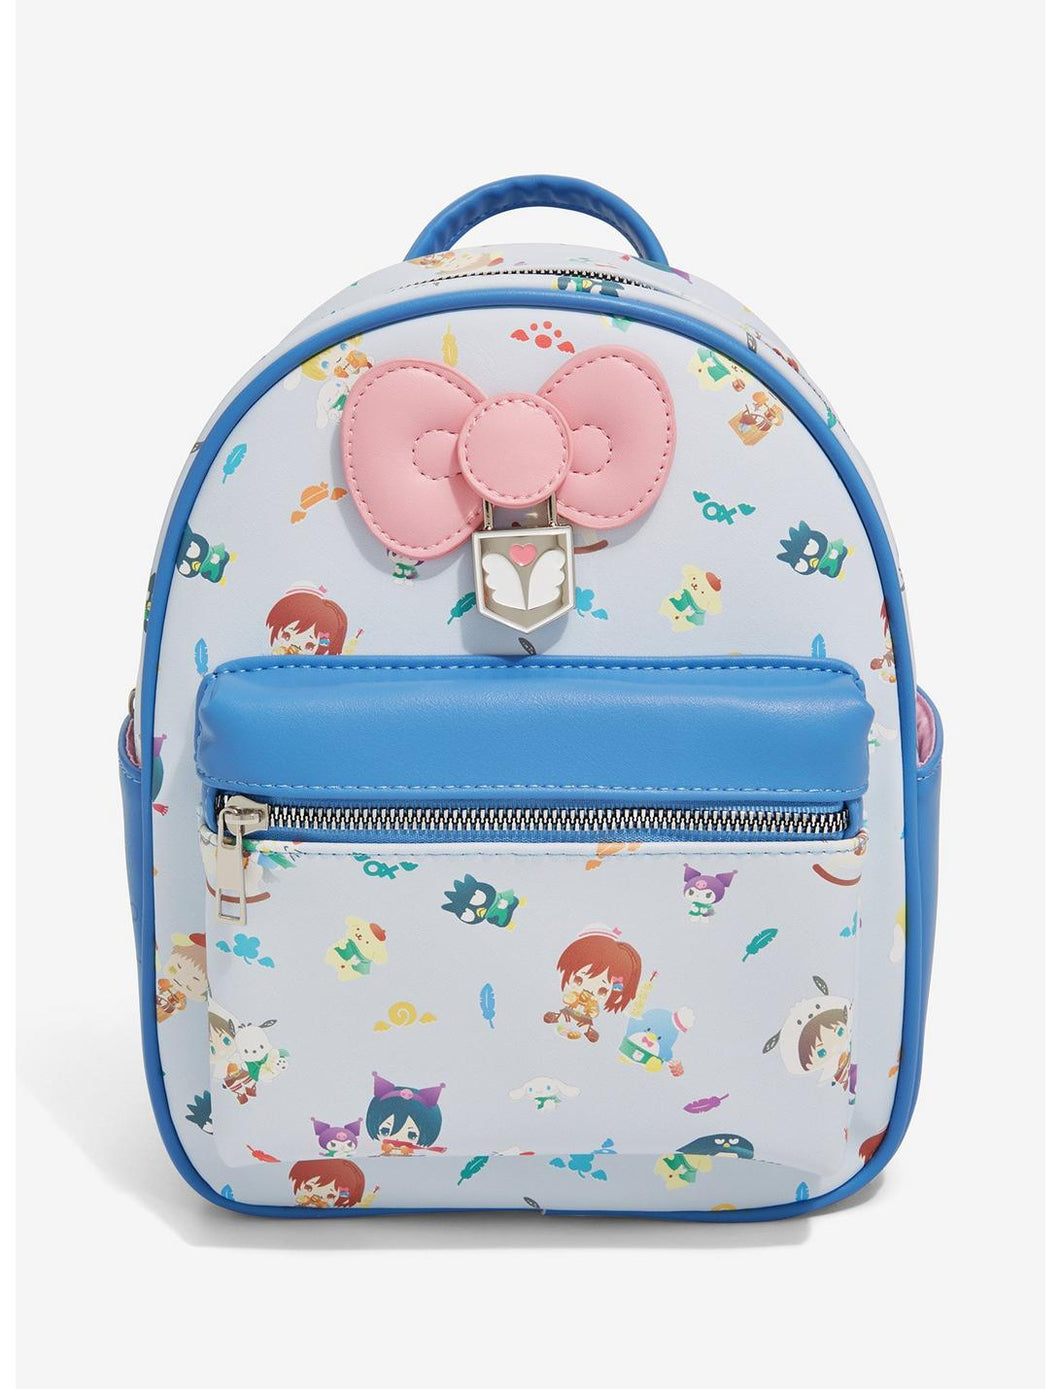 Sanrio Mini Backpack Attack on Titan x Sanrio Bioworld